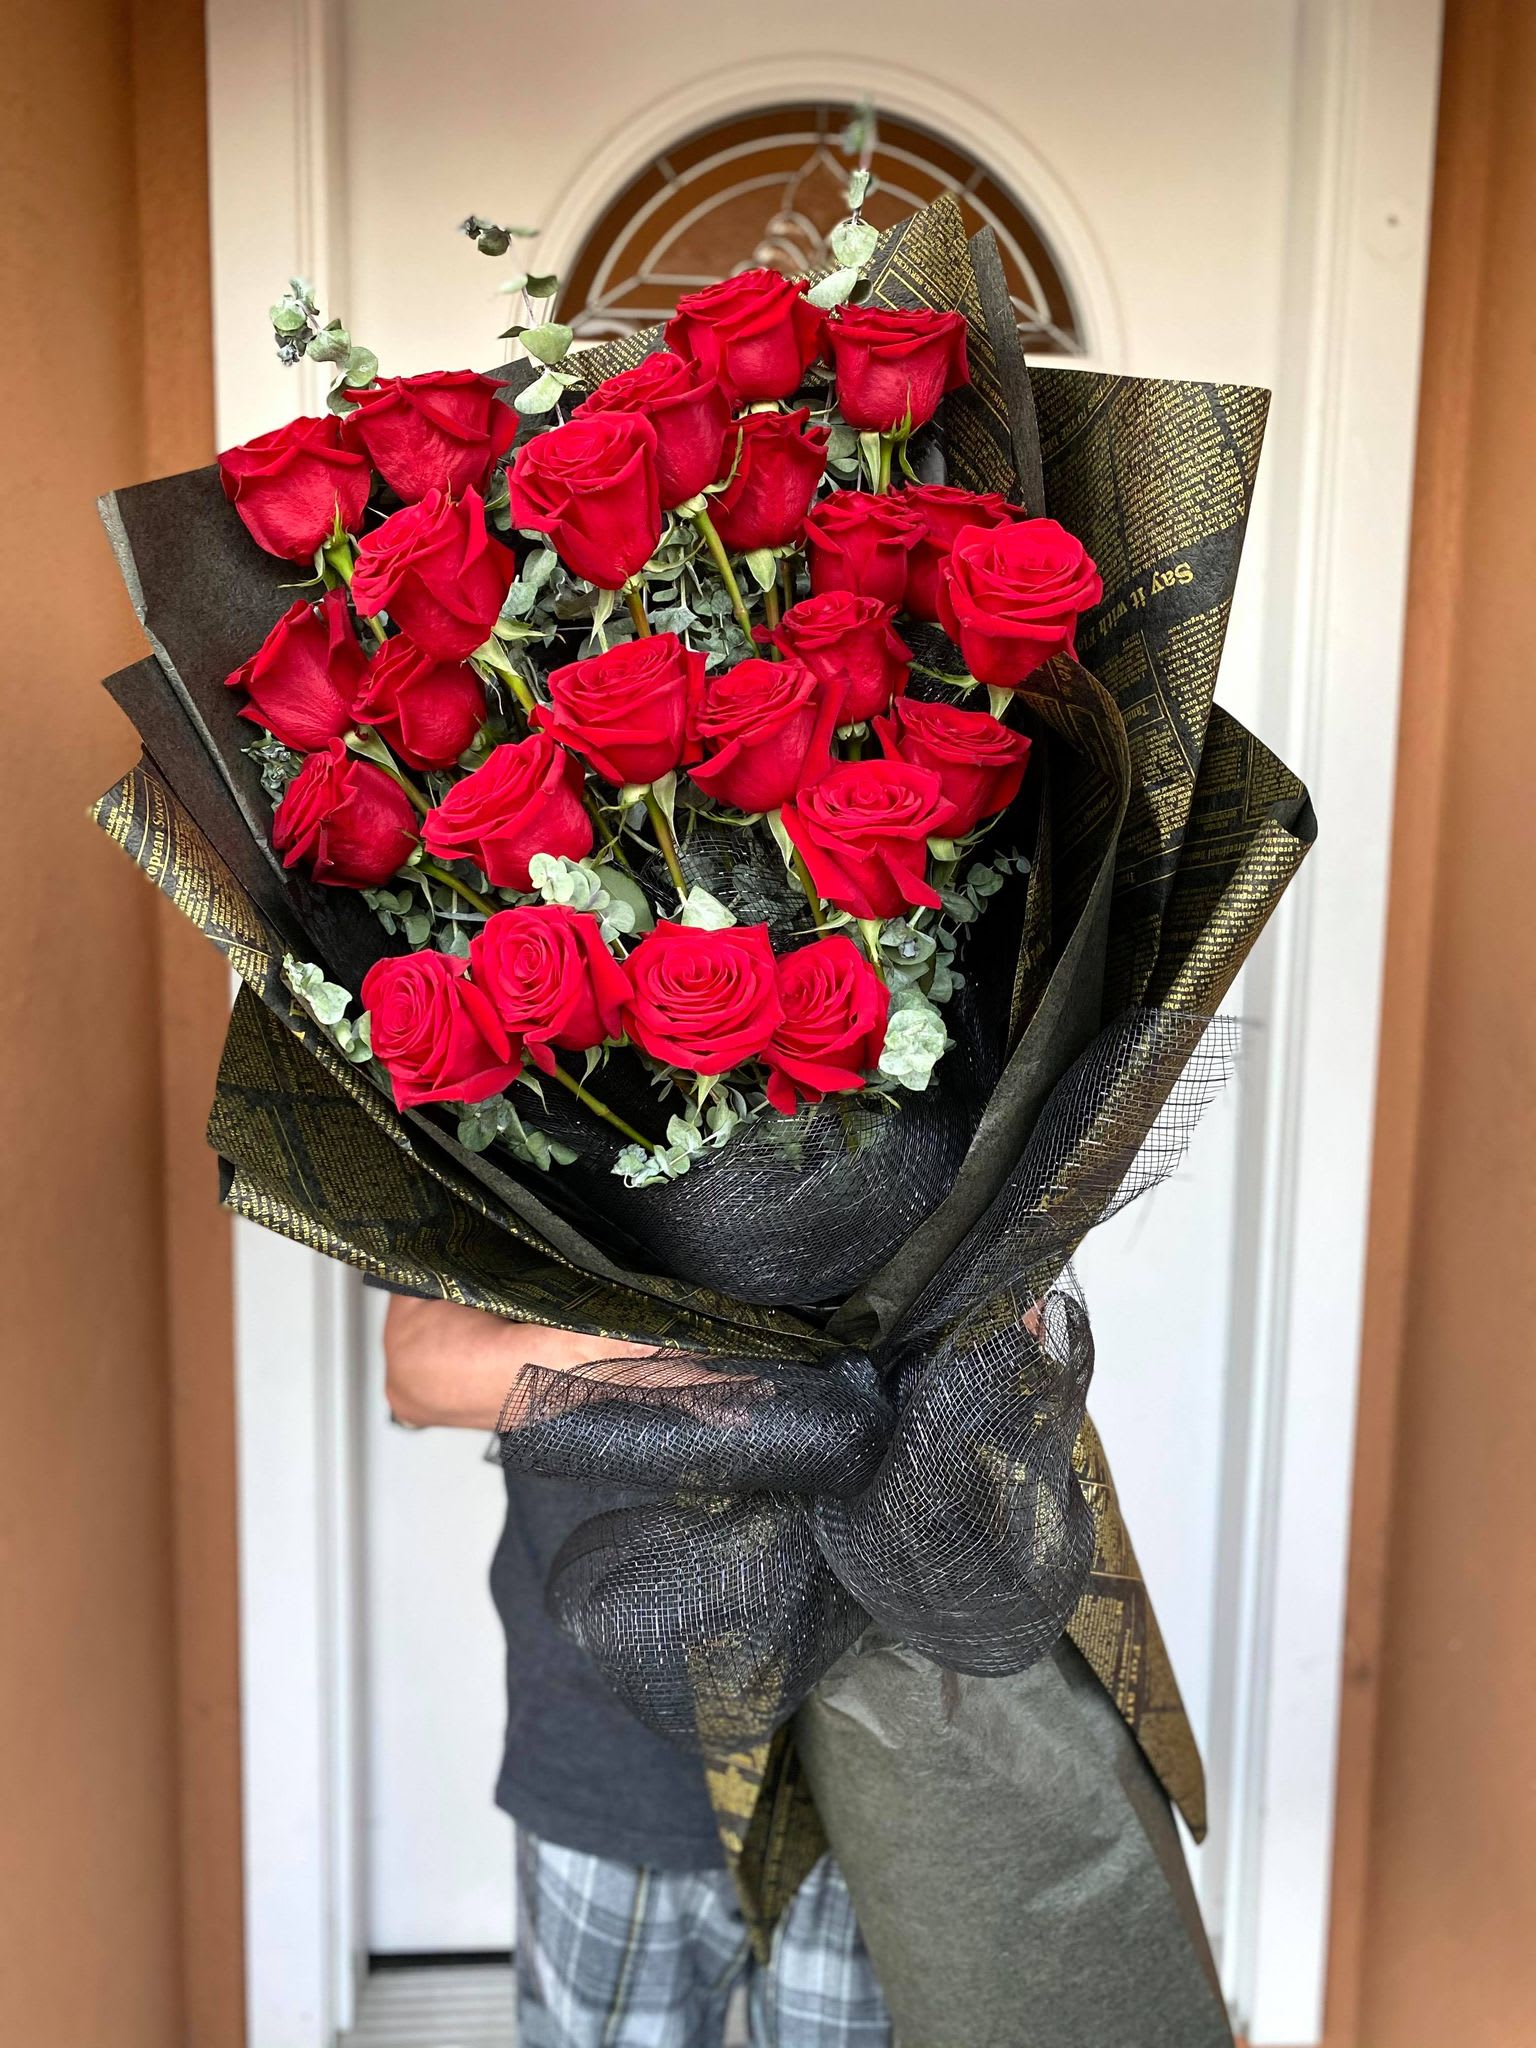 XXL Edition: Premium Signature Red Roses Bouquet in Fountain